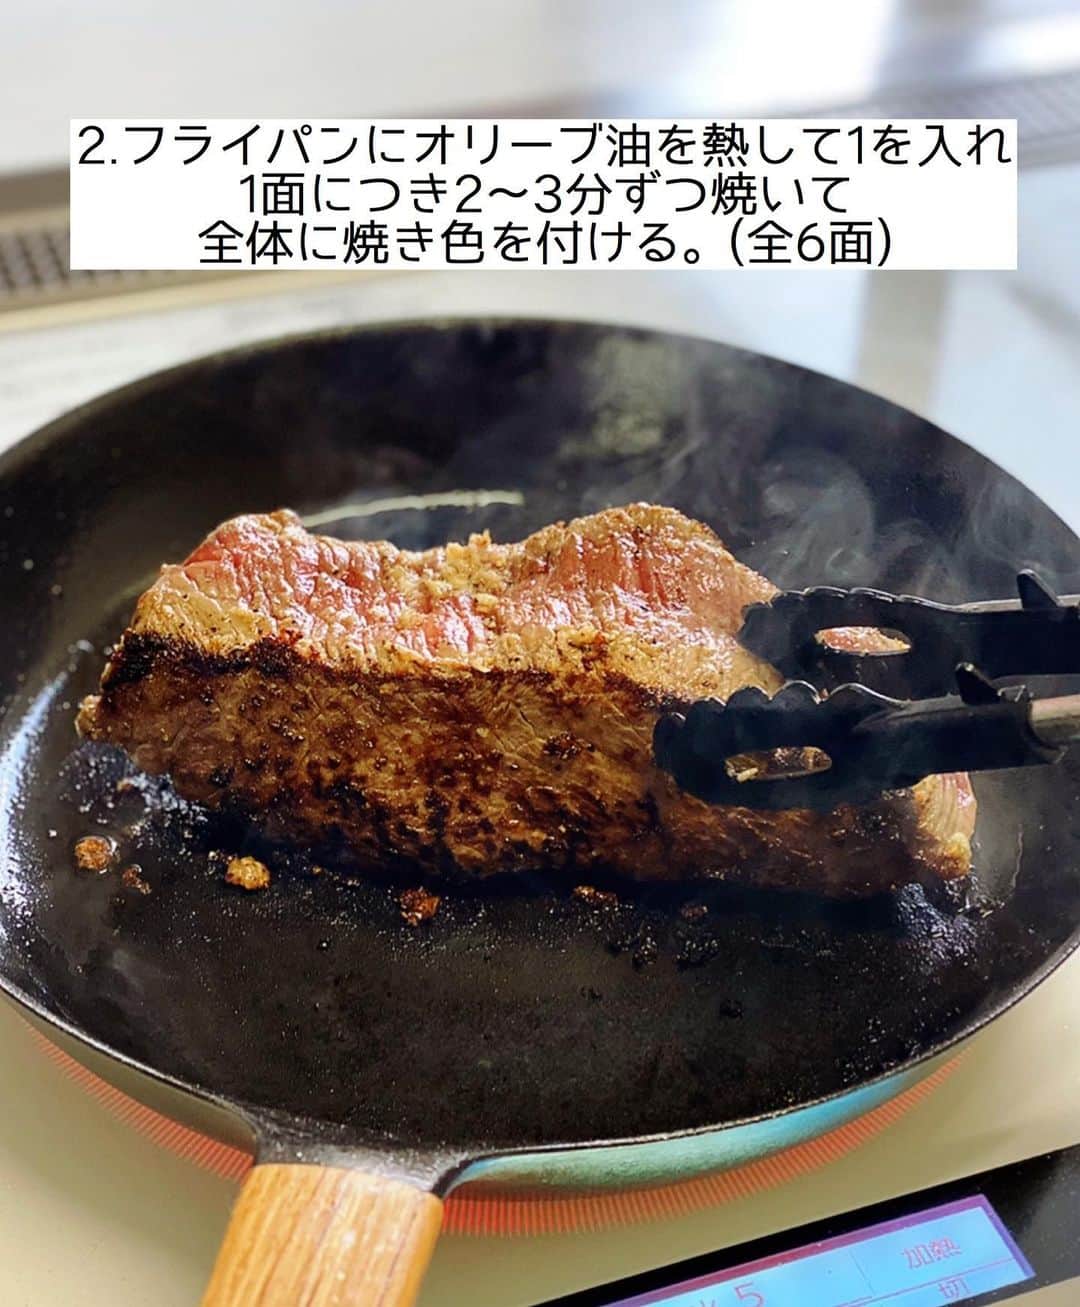 Mizuki【料理ブロガー・簡単レシピ】さんのインスタグラム写真 - (Mizuki【料理ブロガー・簡単レシピ】Instagram)「・﻿ 【#レシピ 】ーーーーーーーーー﻿ ♡フライパンローストビーフ♡﻿ ーーーーーーーーーーーーーーー﻿ ﻿ ﻿ ﻿ おはようございます(*^^*)﻿ ﻿ 今日ご紹介させていただくのは﻿ \フライパンで作るローストビーフ/﻿ ﻿ 特別な道具や調味料を使わなくても﻿ 簡単に美味しく作れますよ♡﻿ 今回はソースもお手軽に﻿ 和風ベースに仕上げました(*´艸`)﻿ ﻿ ローストビーフは見た目も華やかで﻿ クリスマスディナーや﻿ 年末年始のメニューにもおすすめです♩﻿ ﻿ ﻿ ﻿ ＿＿＿＿＿＿＿＿＿＿＿＿＿＿＿＿＿＿＿＿﻿ 【作りやすい量】﻿ 牛ももかたまり肉...400g﻿ ●塩...小2/3﻿ ●粗挽き黒こしょう...適量﻿ ●にんにくすりおろし...1かけ分﻿ オリーブオイル...小2﻿ ☆醤油・酒・みりん...各大3﻿ ☆粒マスタード...大1﻿ ﻿ 1.牛肉は1時間程前に冷蔵庫から出して室温に戻し、表面に●を擦り込む。﻿ 2.フライパンにオリーブオイルを中火で熱して1を入れ、1面につき2〜3分ずつ焼いて全体に焼き色を付ける。(全6面)﻿ 3.火を止め、熱い内にアルミホイルで二重に包み、フライパンに戻して蓋をして20分置く。(余熱で火を通します)﻿ 4.☆をフライパンに入れて中火にかけ、混ぜながら少し煮詰めてソースを作る。3を薄切りにして器に盛り、ソースをかける。﻿ ￣￣￣￣￣￣￣￣￣￣￣￣￣￣￣￣￣￣￣￣﻿ ﻿ ﻿ ﻿ 《ポイント》﻿ ♦︎牛肉は新鮮なものを使用して下さい☆必ず室温に戻し、焼く直前に●を擦り込みます☆﻿ ♦︎牛肉は表面(全6面)にしっかり焼き色が付くように焼いて下さい♩﻿ ♦︎工程3では火を止めたフライパンに牛肉を戻し入れ、余熱で火を通します♩﻿ ♦︎私が使用した牛肉は厚み4〜5cmのものです♩ ♦︎切ったばかりは淡く落ち着いた赤色ですが、空気に触れると鮮やかな色になってきます♩﻿ ﻿ ﻿ ﻿ ﻿ ﻿ ﻿ ﻿ ﻿ 📕新刊予約開始しました📕﻿ 【ラクしておいしい！#1品晩ごはん 】﻿ ￣￣￣￣￣￣￣￣￣￣￣￣￣￣￣￣￣﻿ 私たちだってヘトヘトな日がある•••﻿ 毎日何品も作っていられない•••﻿ もうごはんに悩みたくない😢﻿ そう思うことってありませんか？﻿ そんな時、1品ごはんはいかがでしょう？﻿ というご提案です✨﻿ ﻿ ﻿ 【1品ごはん】は﻿ 副菜いらずで全てがシンプル！﻿ ￣￣￣￣￣￣￣￣￣￣￣￣￣￣￣￣￣￣﻿ 一品つくるだけでいいから﻿ 献立を考えなくてよし！﻿ ￣￣￣￣￣￣￣￣￣￣￣￣￣￣￣￣￣￣﻿ 悩まない、疲れない、﻿ 気力や時間がなくてもなんとかなる！﻿ ￣￣￣￣￣￣￣￣￣￣￣￣￣￣￣￣￣￣﻿ そんな頼りになる﻿ 便利なお助けごはんです☺️💕﻿ (ハイライトに🔗貼っています✨)﻿ ￣￣￣￣￣￣￣￣￣￣￣￣￣￣￣￣￣﻿ ﻿ ﻿ ﻿ ﻿ ﻿ ⭐️発売中⭐️﻿ ＿＿＿＿＿＿＿＿＿＿＿＿＿＿＿＿＿＿﻿ しんどくない献立、考えました♩﻿ \15分でいただきます/﻿ 📕#Mizukiの2品献立 📕﻿ ﻿ 和食をもっとカジュアルに♩﻿ \毎日のごはんがラクになる/﻿ 📘#Mizukiの今どき和食 📘﻿ ﻿ ホケミレシピの決定版♩﻿ \はじめてでも失敗しない/﻿ 📙#ホットケーキミックスのお菓子 📙﻿ ﻿ NHKまる得マガジンテキスト☆﻿ ホットケーキミックスで﻿ 📗絶品おやつ&意外なランチ📗﻿ ￣￣￣￣￣￣￣￣￣￣￣￣￣￣￣￣￣￣﻿ ﻿ ﻿ ﻿ ＿＿＿＿＿＿＿＿＿＿＿＿＿＿＿＿＿＿﻿ レシピを作って下さった際や﻿ レシピ本についてのご投稿には﻿ タグ付け( @mizuki_31cafe )して﻿ お知らせいただけると嬉しいです😊💕﻿ ￣￣￣￣￣￣￣￣￣￣￣￣￣￣￣￣￣￣﻿ ﻿ ﻿ ﻿ ﻿ #ローストビーフ#クリスマス#牛肉#Mizuki#簡単レシピ#時短レシピ#節約レシピ#料理#フーディーテーブル#マカロニメイト#おうちごはん#デリスタグラマー#料理好きな人と繋がりたい#食べ物#料理記録#おうちごはんlover#写真好きな人と繋がりたい#foodpic#cooking#recipe#lin_stagrammer#foodporn#yummy#f52grams#フライパンローストビーフm」12月15日 7時08分 - mizuki_31cafe